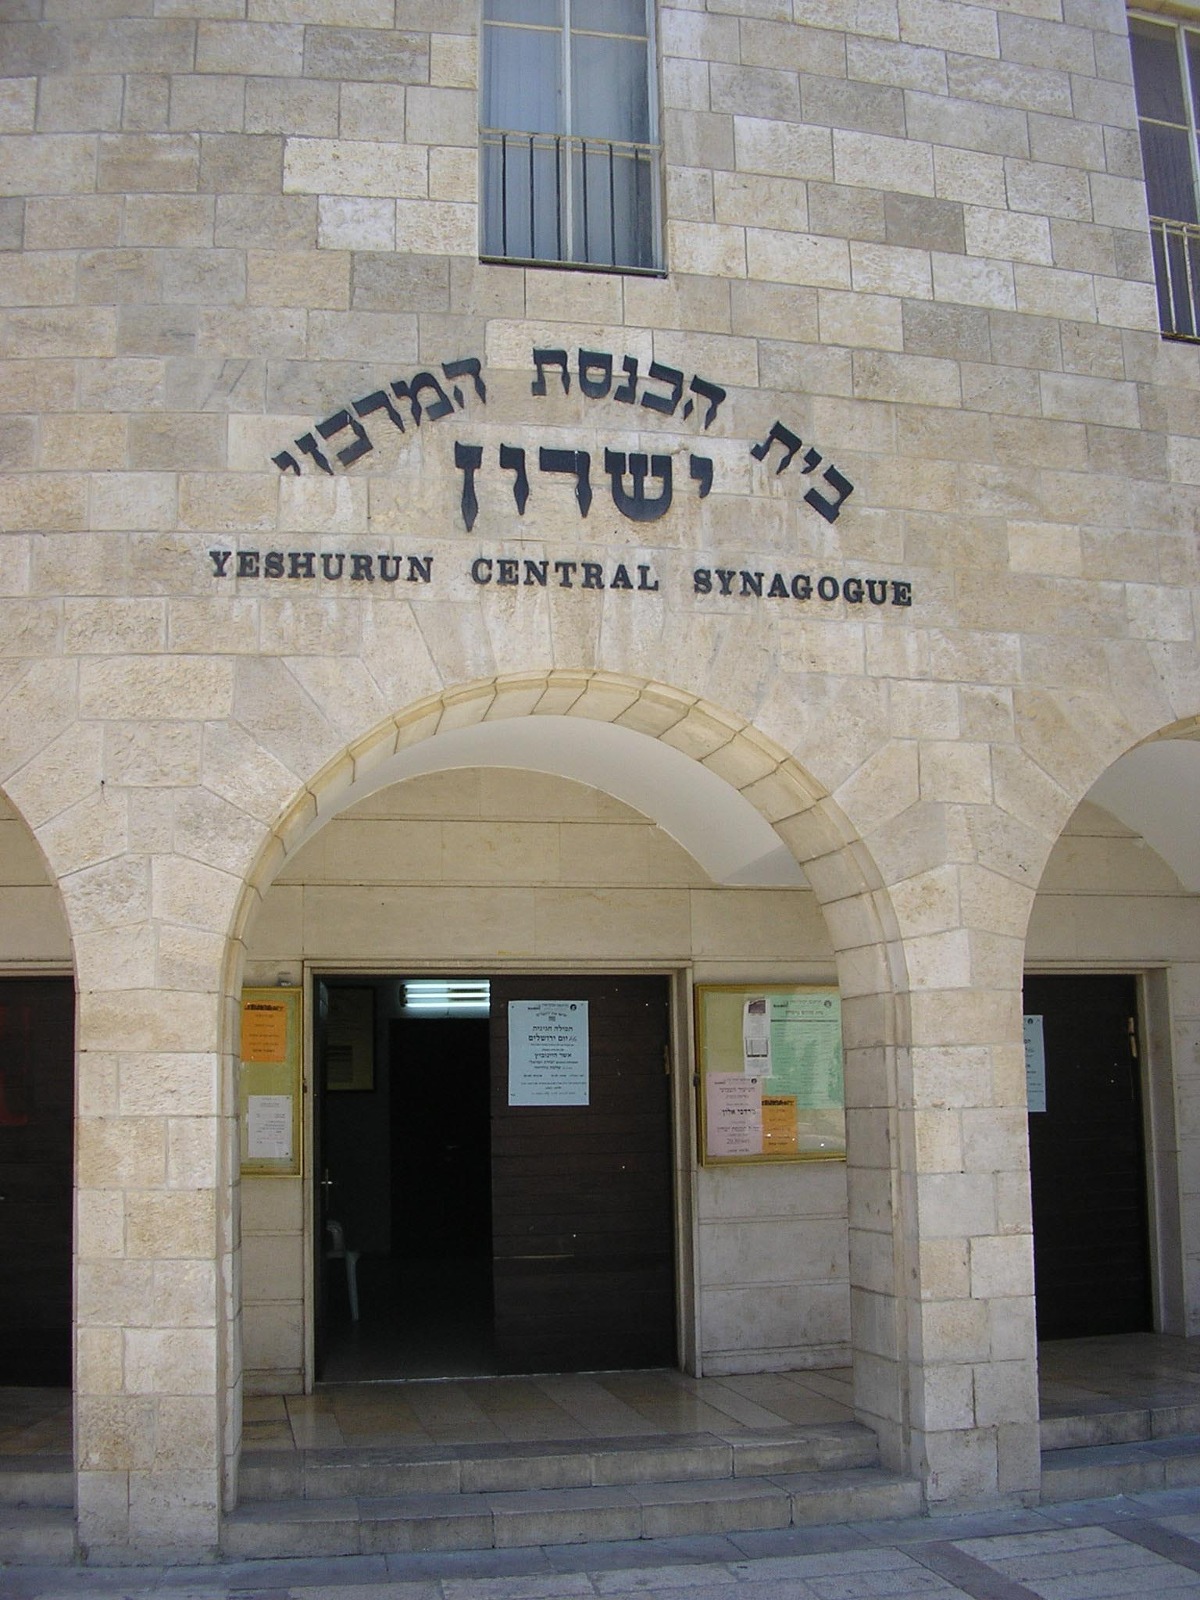 בית הכנסת ישרון, חוגג מאה